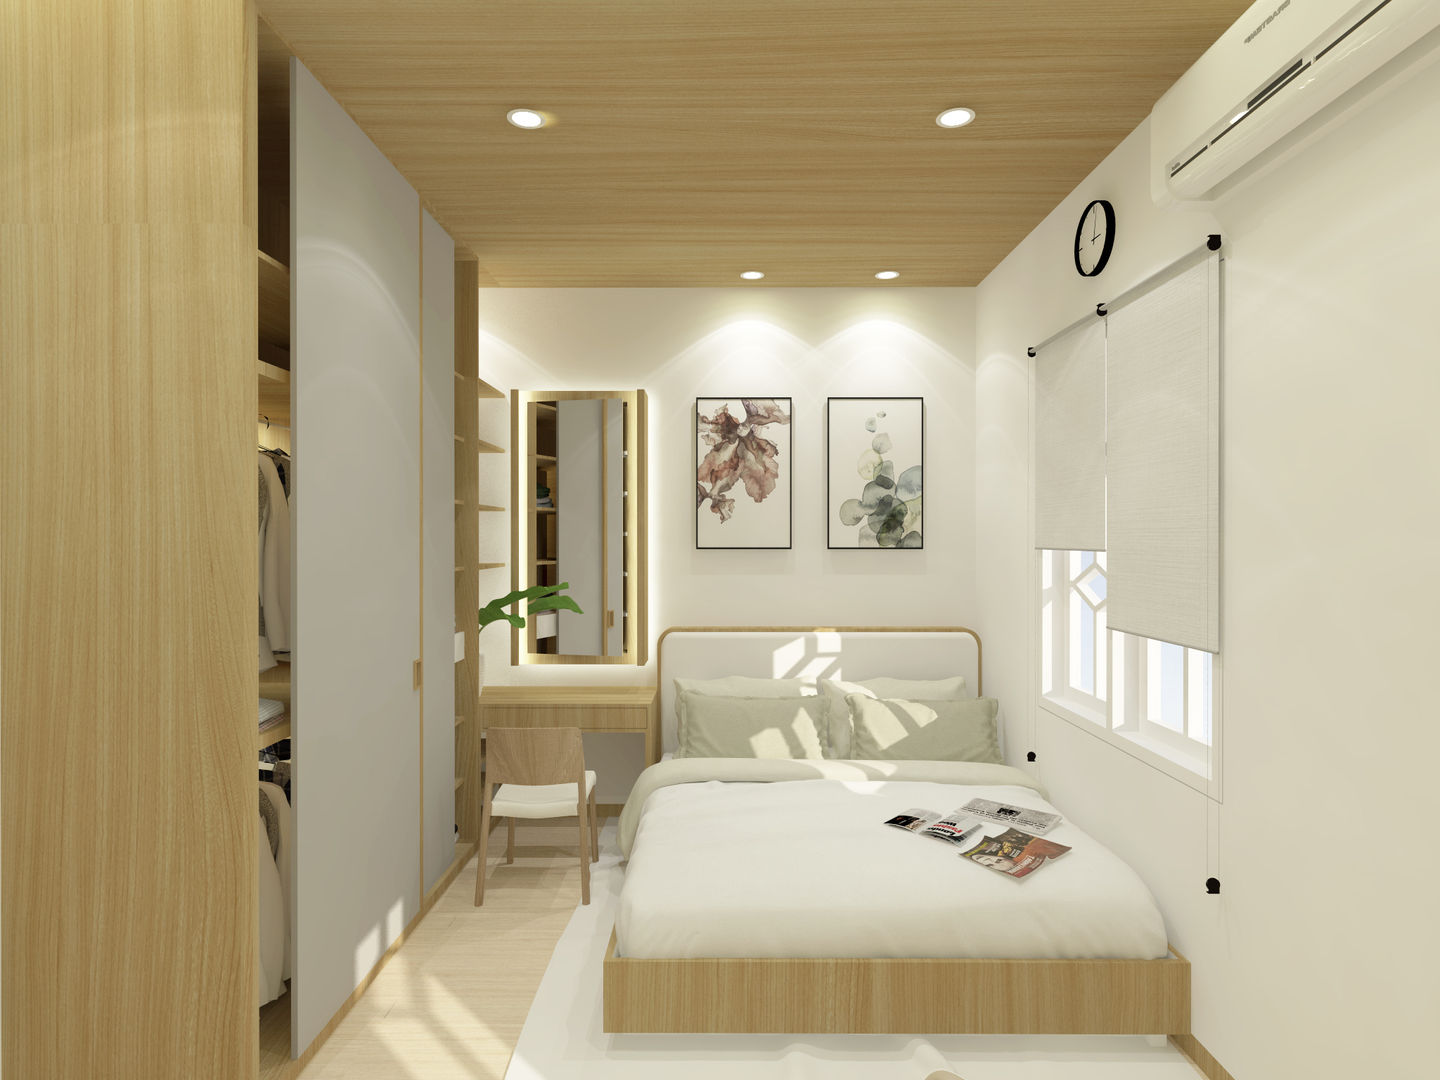 Mr.Adrian's Bedroom Design, SEKALA Studio SEKALA Studio Habitaciones modernas